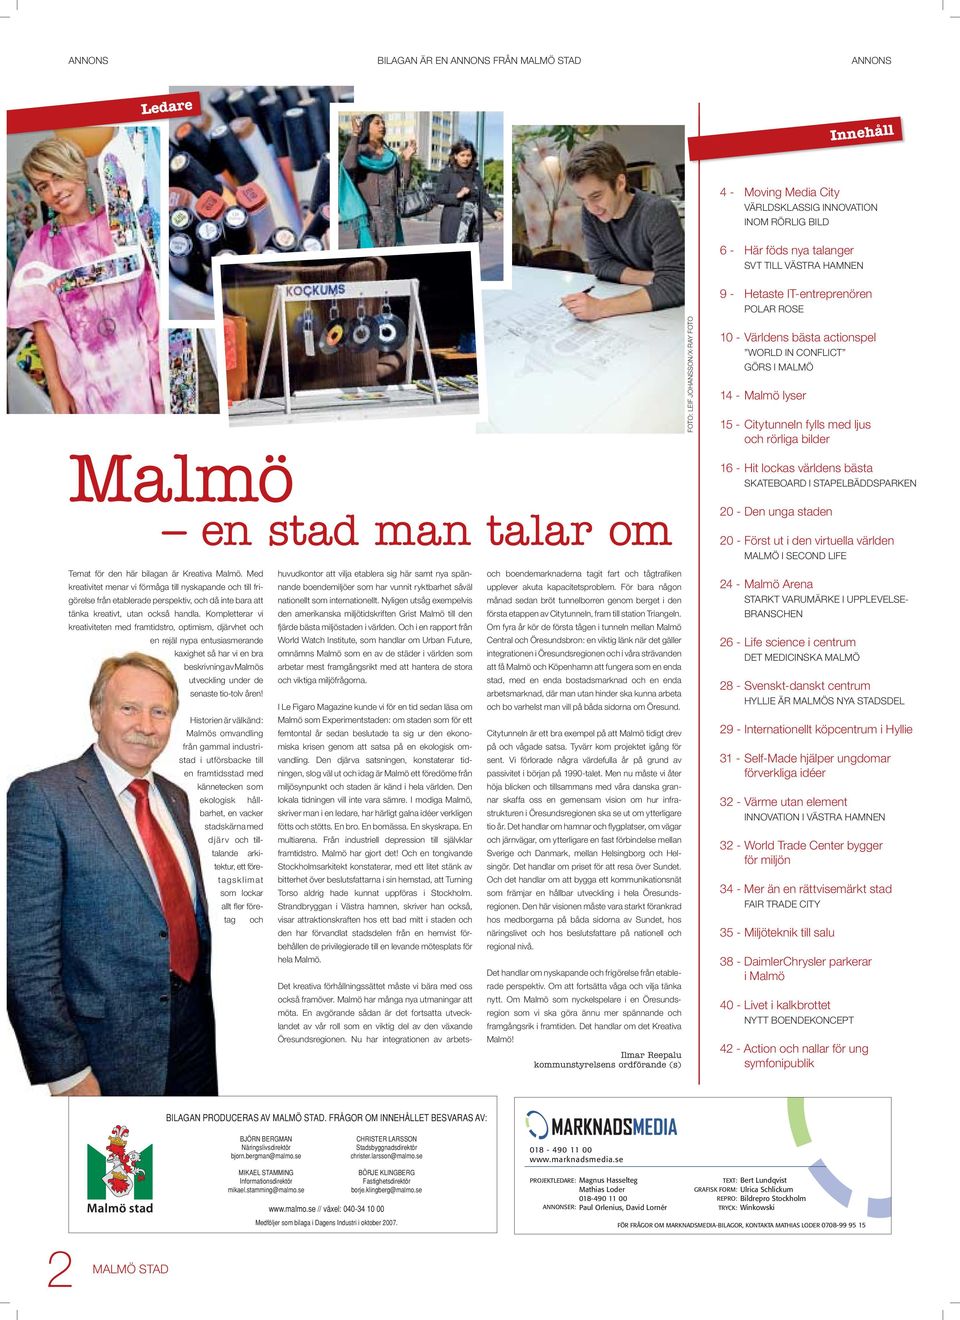 Kompletterar vi kreativiteten med framtidstro, optimism, djärvhet och en rejäl nypa entusiasmerande kaxighet så har vi en bra beskrivning av Malmös utveckling under de senaste tio-tolv åren!